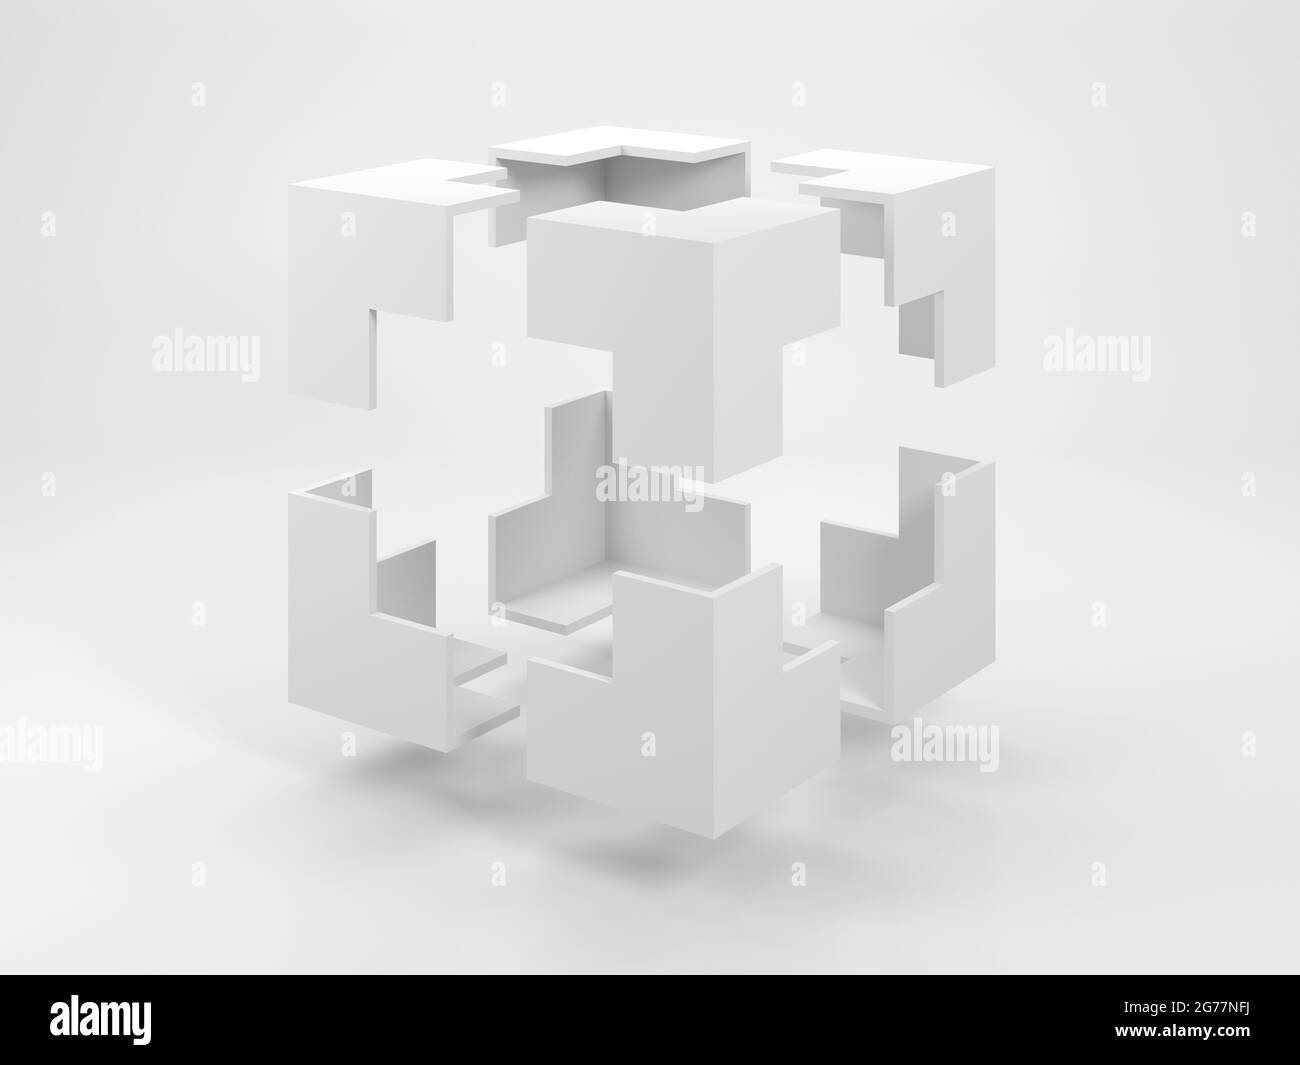 Abstraktes weißes geometrisches Objekt, eine leere Begrenzungsbox mit fliegenden Ecken, ist ein weißes Studio. 3D-Rendering-Illustration Stockfoto